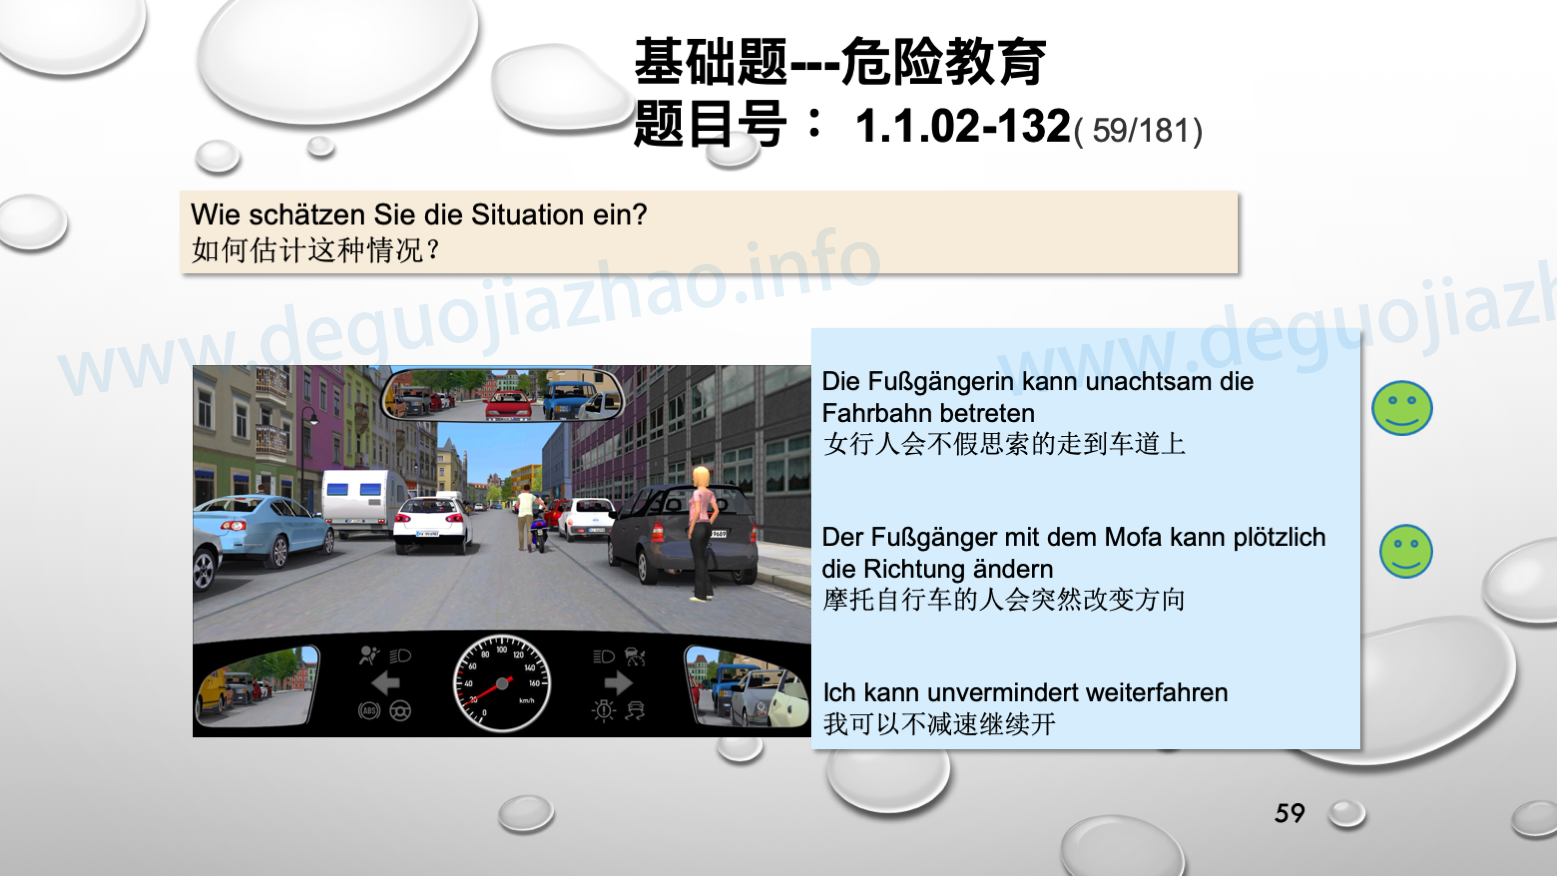 德国驾照官方理论题 章节 1.1.02 面对行人时的行为准则